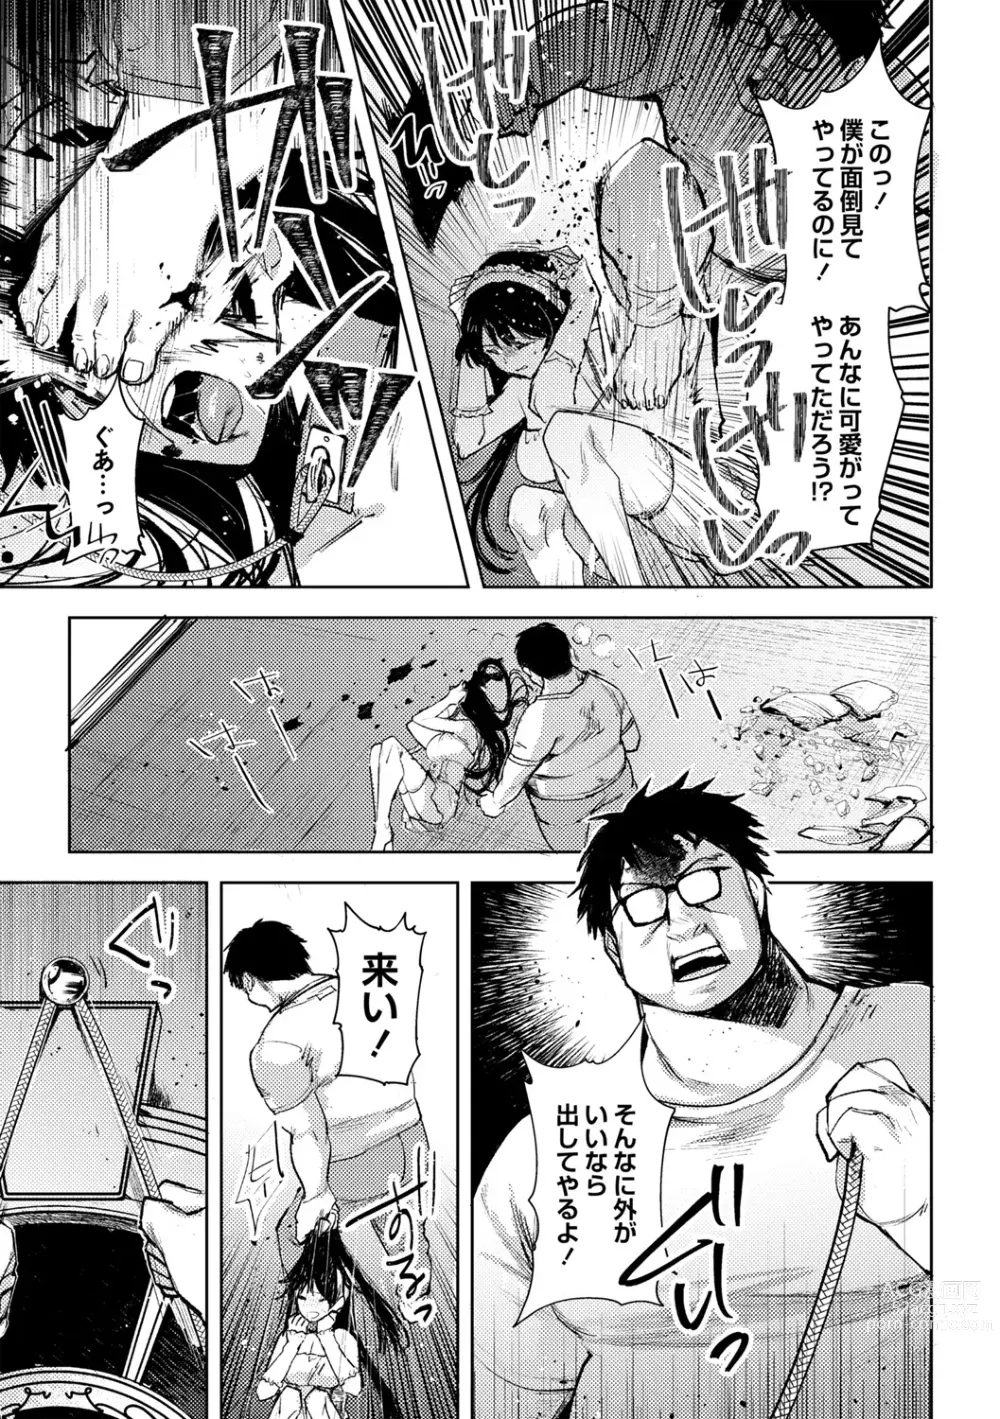 Page 21 of manga Yuuhei  KodoOji no Tou